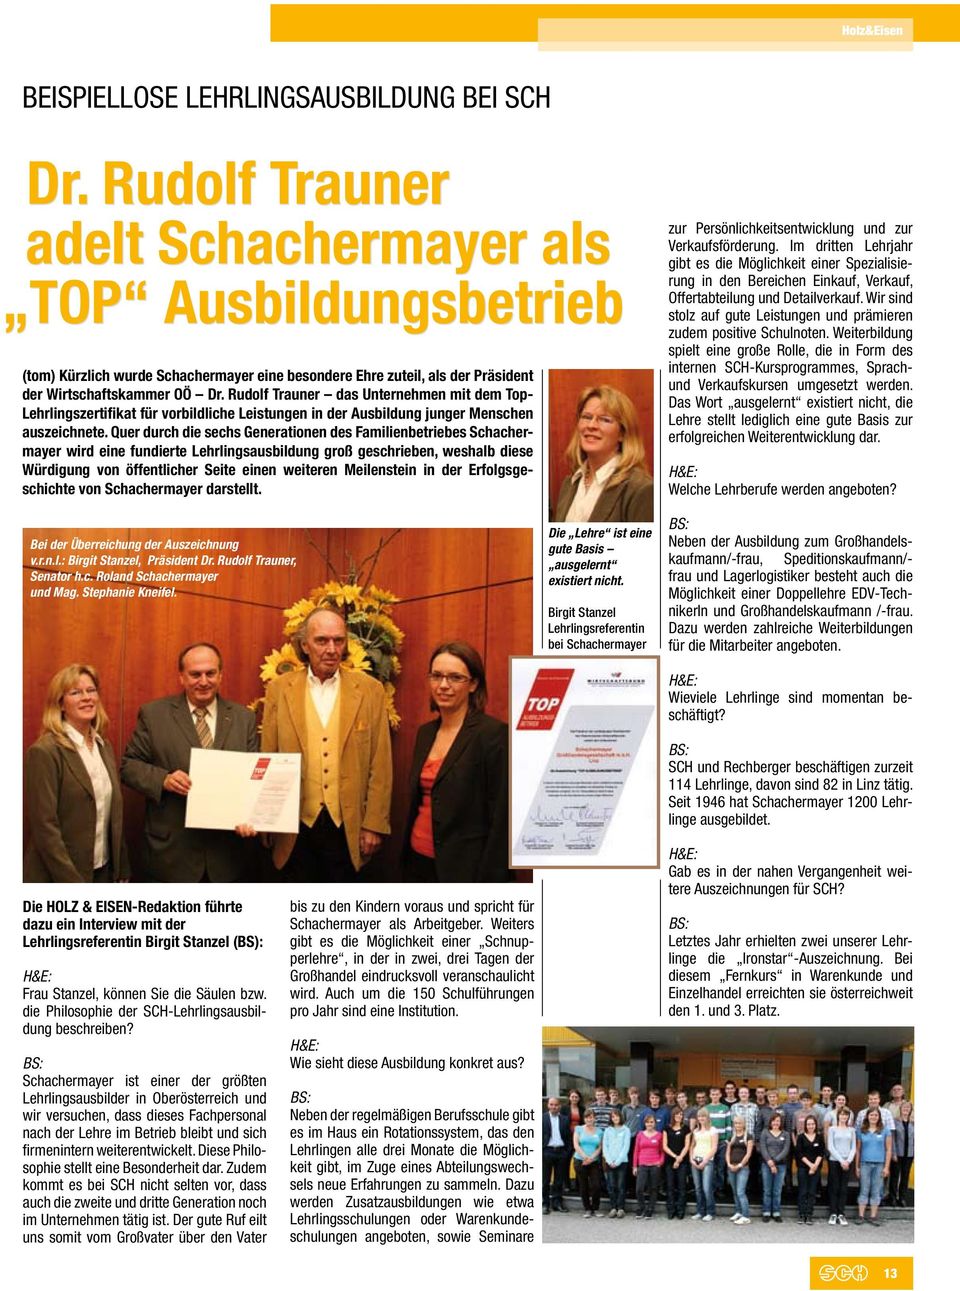 Rudolf Trauner das Unternehmen mit dem Top- Lehrlingszertifikat für vorbildliche Leistungen in der Ausbildung junger Menschen auszeichnete.